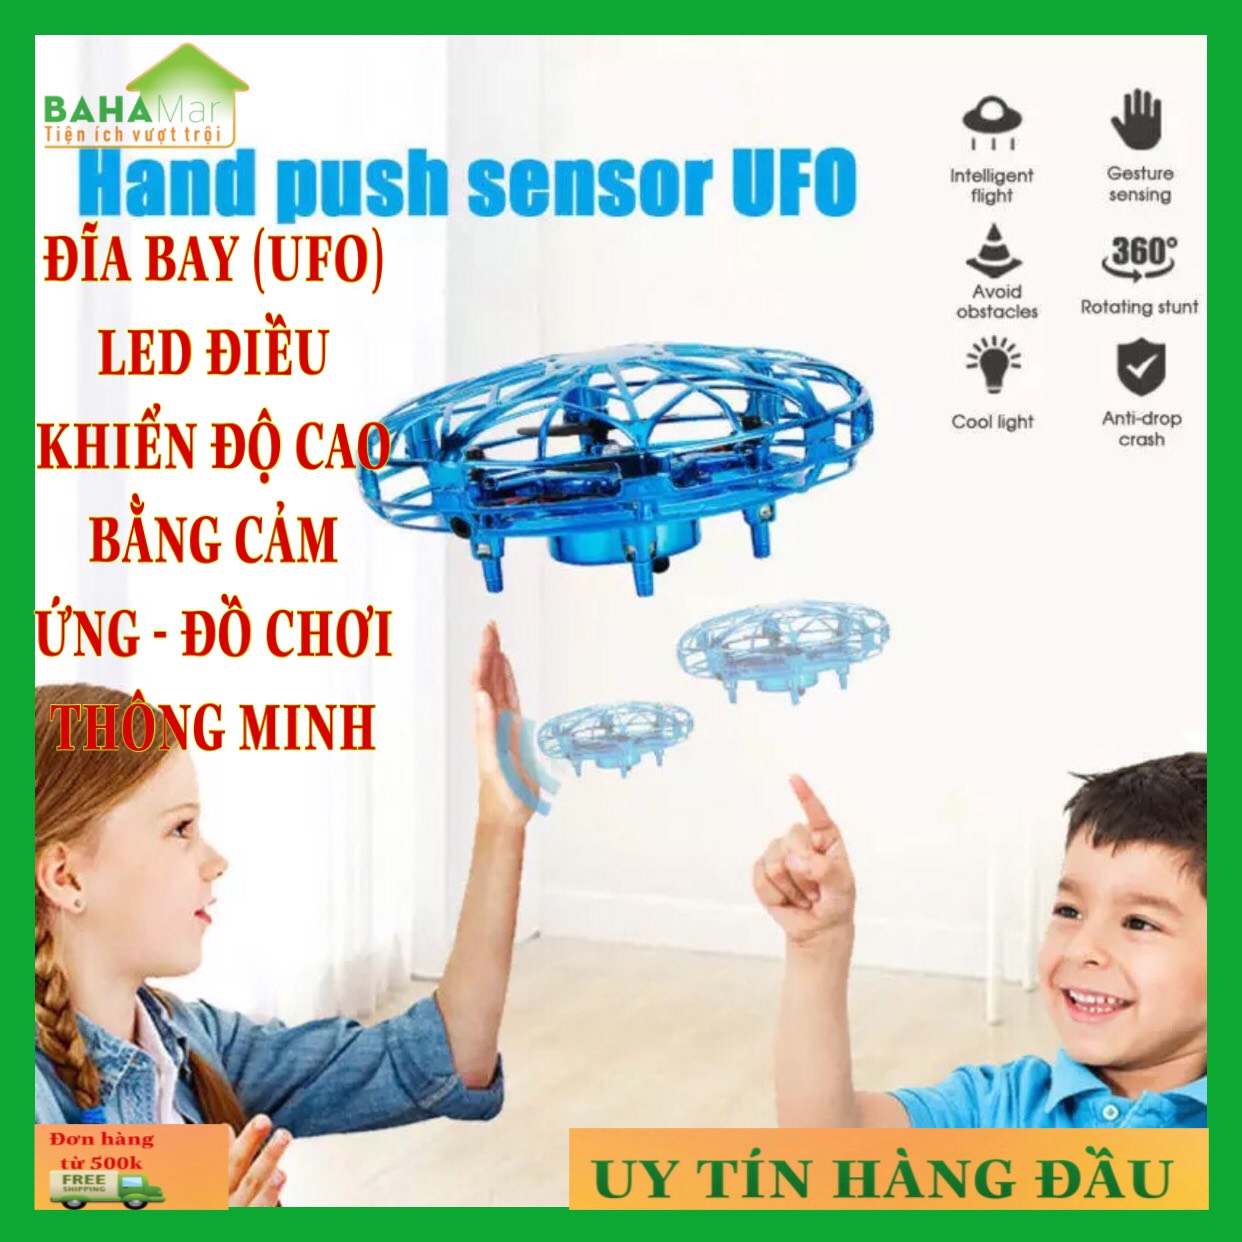 ĐĨA BAY (UFO) LED ĐIỀU KHIỂN ĐỘ CAO BẰNG CẢM ỨNG - ĐỒ CHƠI THÔNG MINH &quot;BAHAMAR&quot; đường kính nhỏ, kết cấu mềm mại, chống va chạm, có cảm ứng hồng ngoại, thích hợp cho cả trẻ em và người lớn